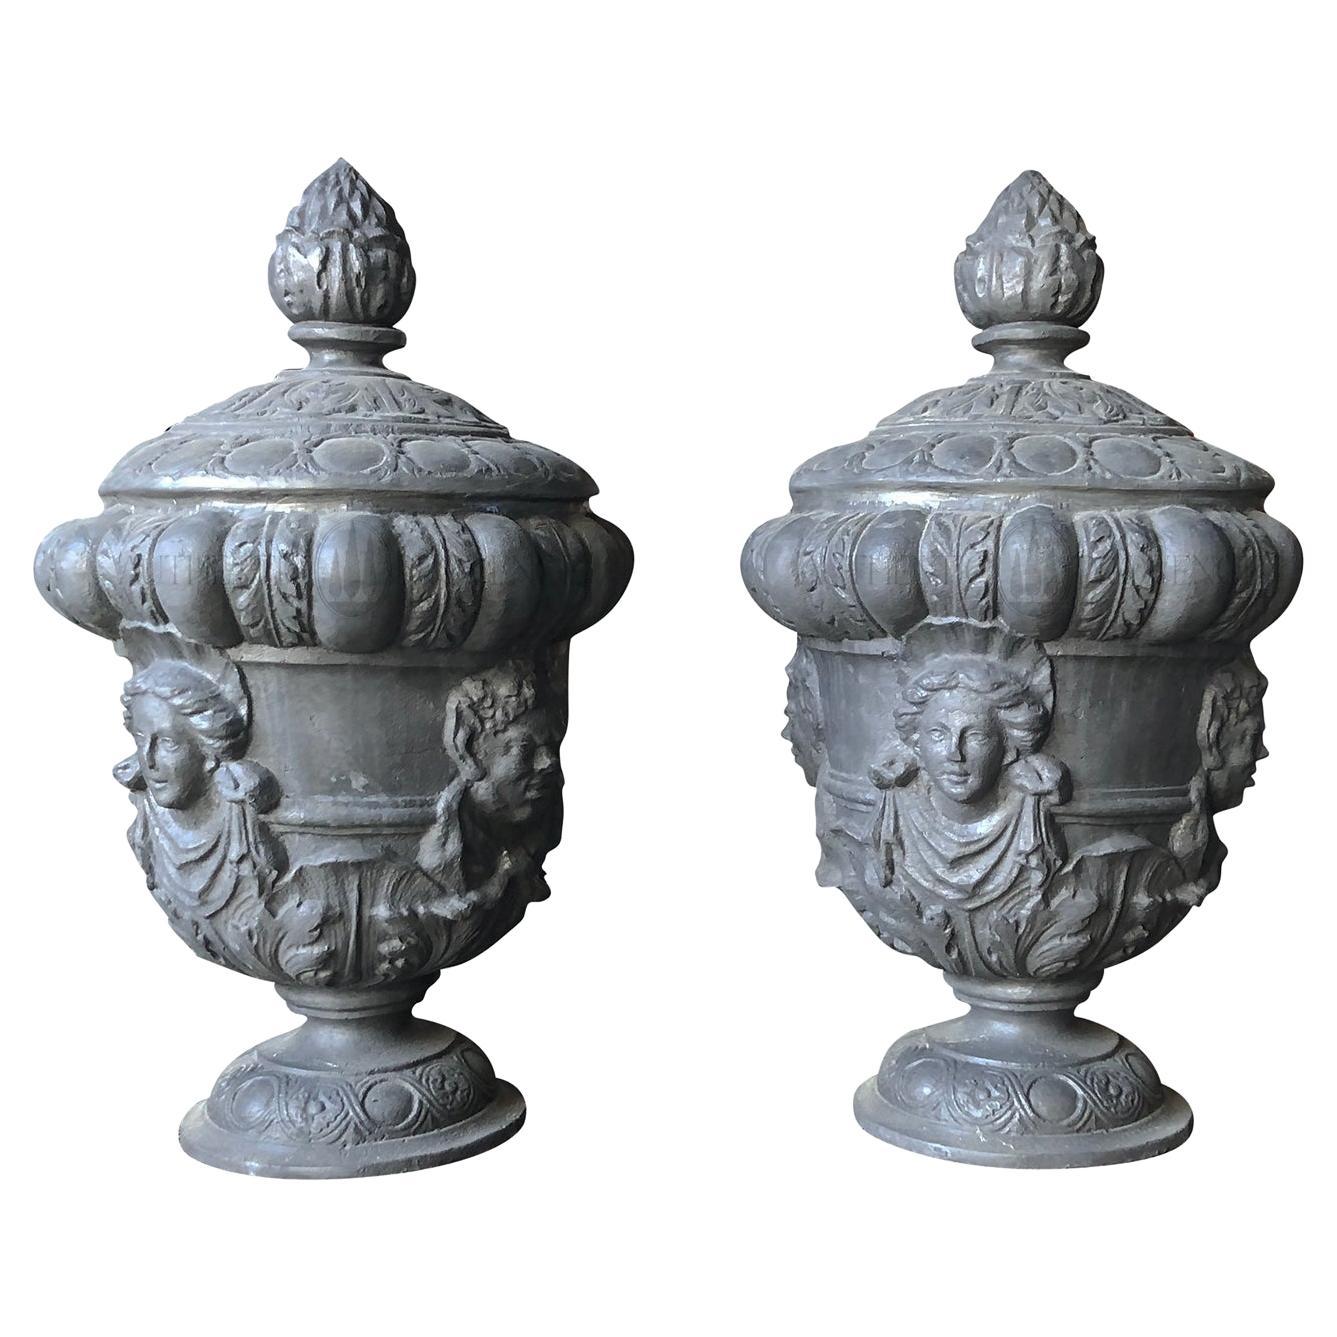 20th Century Grey English Pair of Lead Queen Anne Finials, Vintage Garden Urns